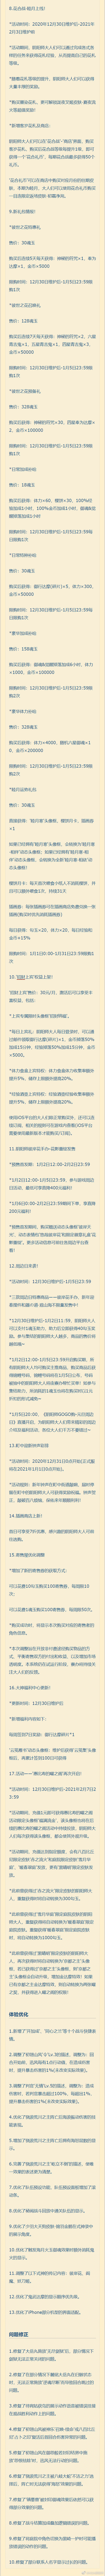 阴阳师体验服12月30日改造公告式样一览